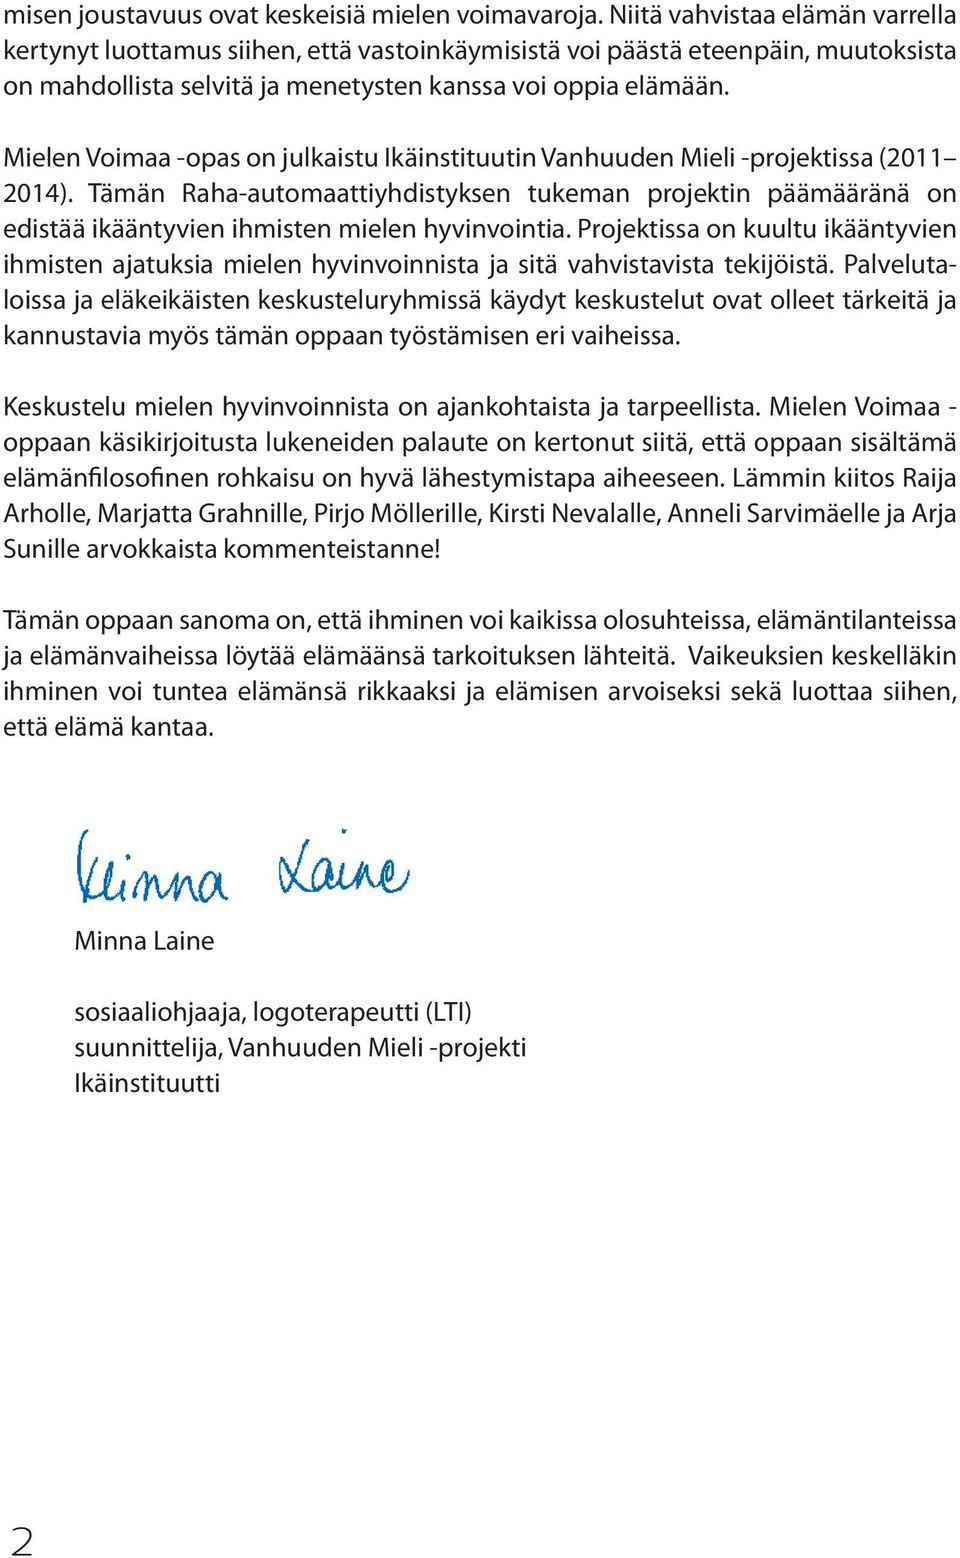 Mielen Voimaa -opas on julkaistu Ikäinstituutin Vanhuuden Mieli -projektissa (2011 2014).